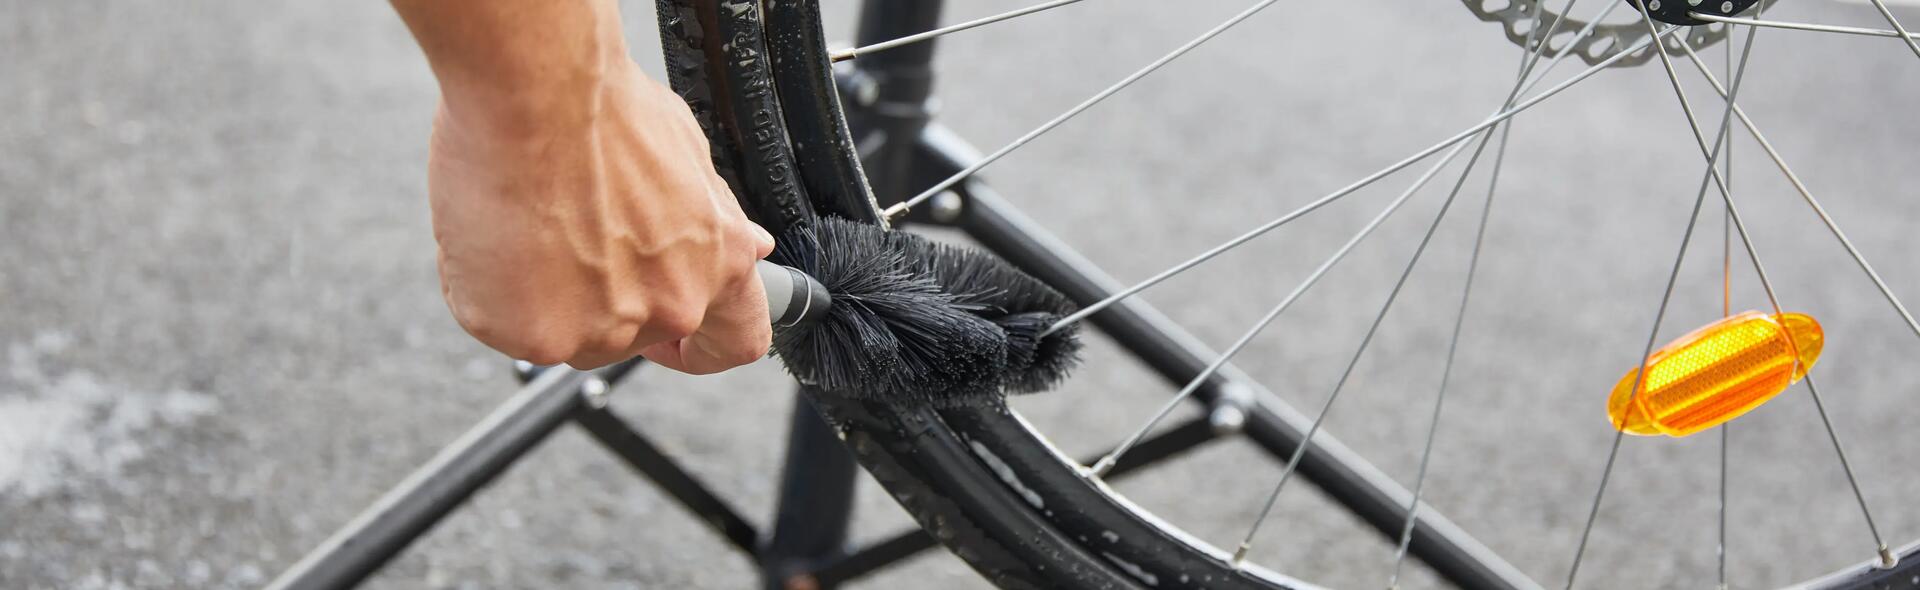 Come riparare un raggio della ruota della bici?